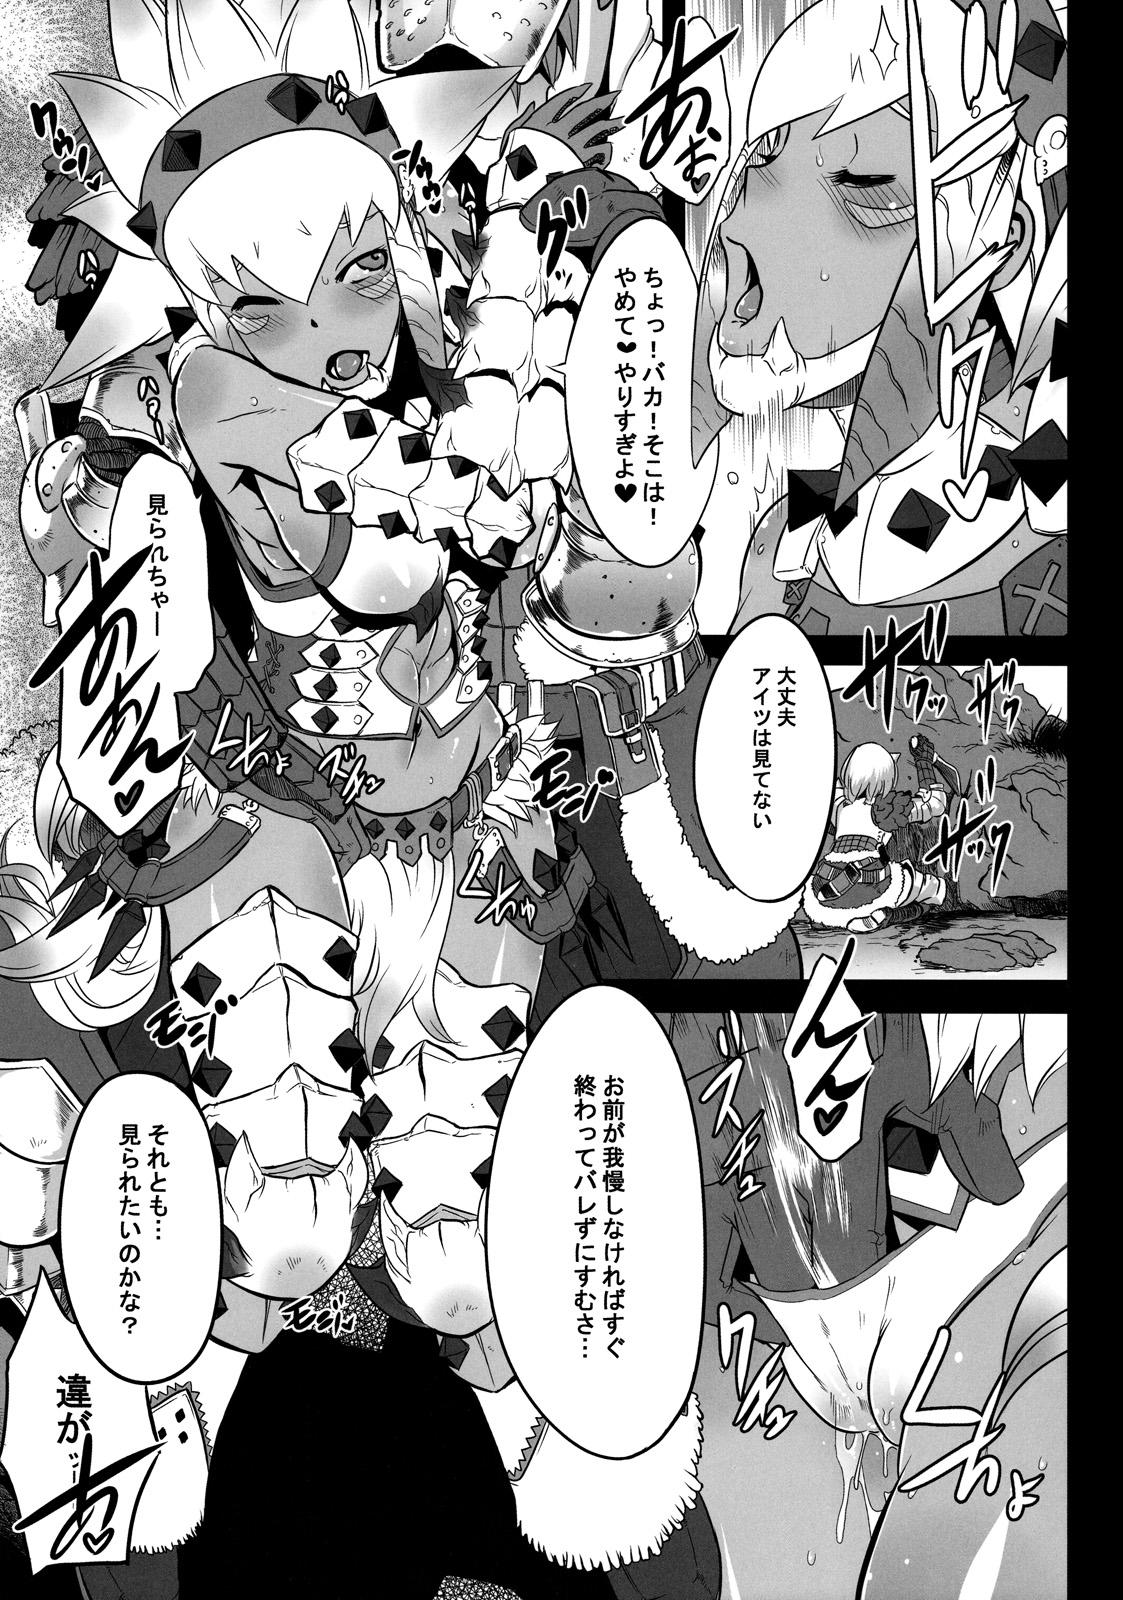 Speculum Hanshoku Nebura - Monster hunter Maid - Page 5